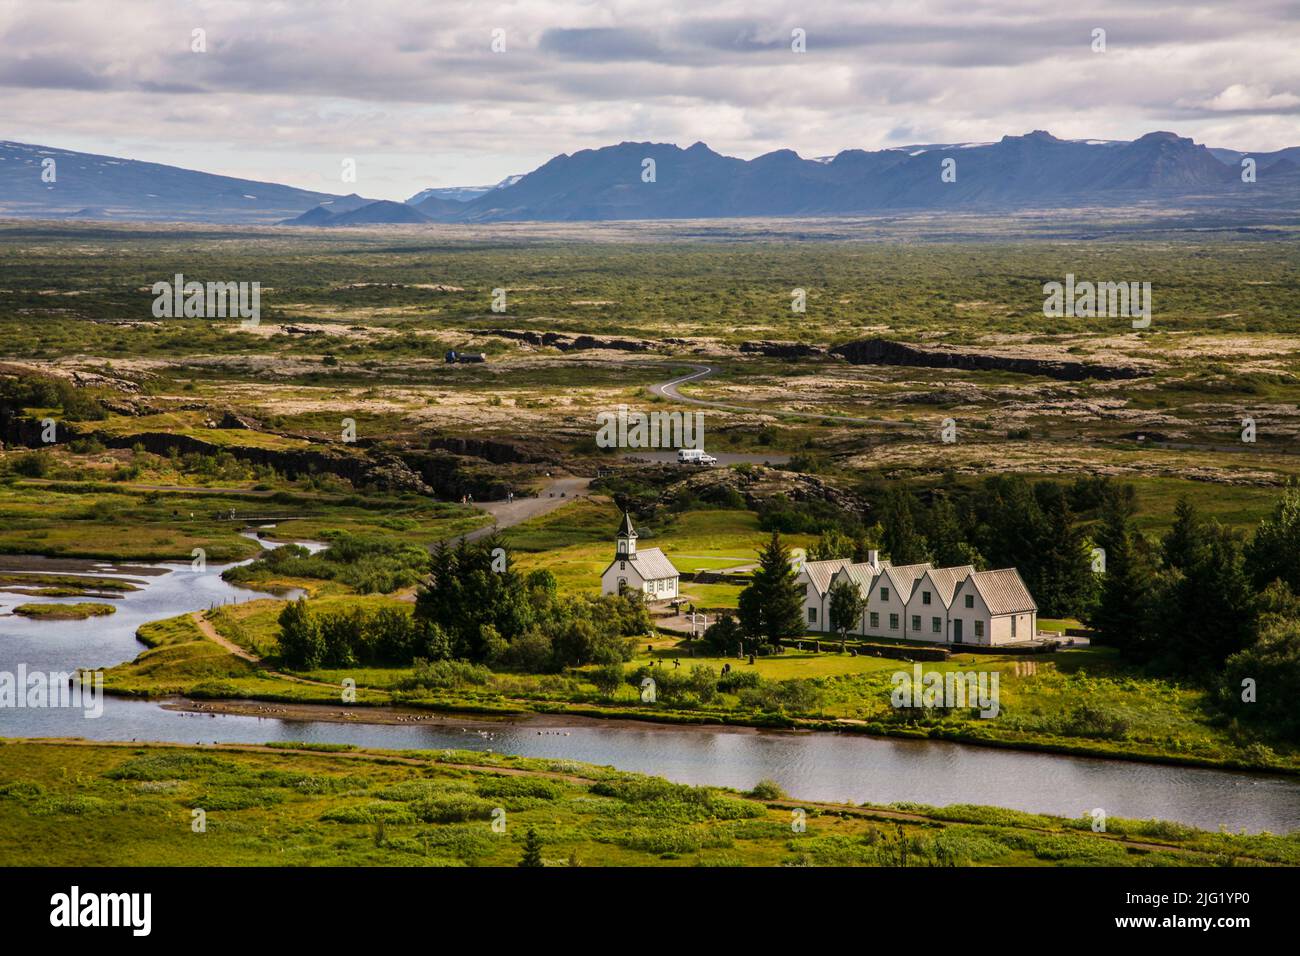 Parc national de Thingvellir, première législature dans le monde, 930 AD, Islande, Europe Banque D'Images